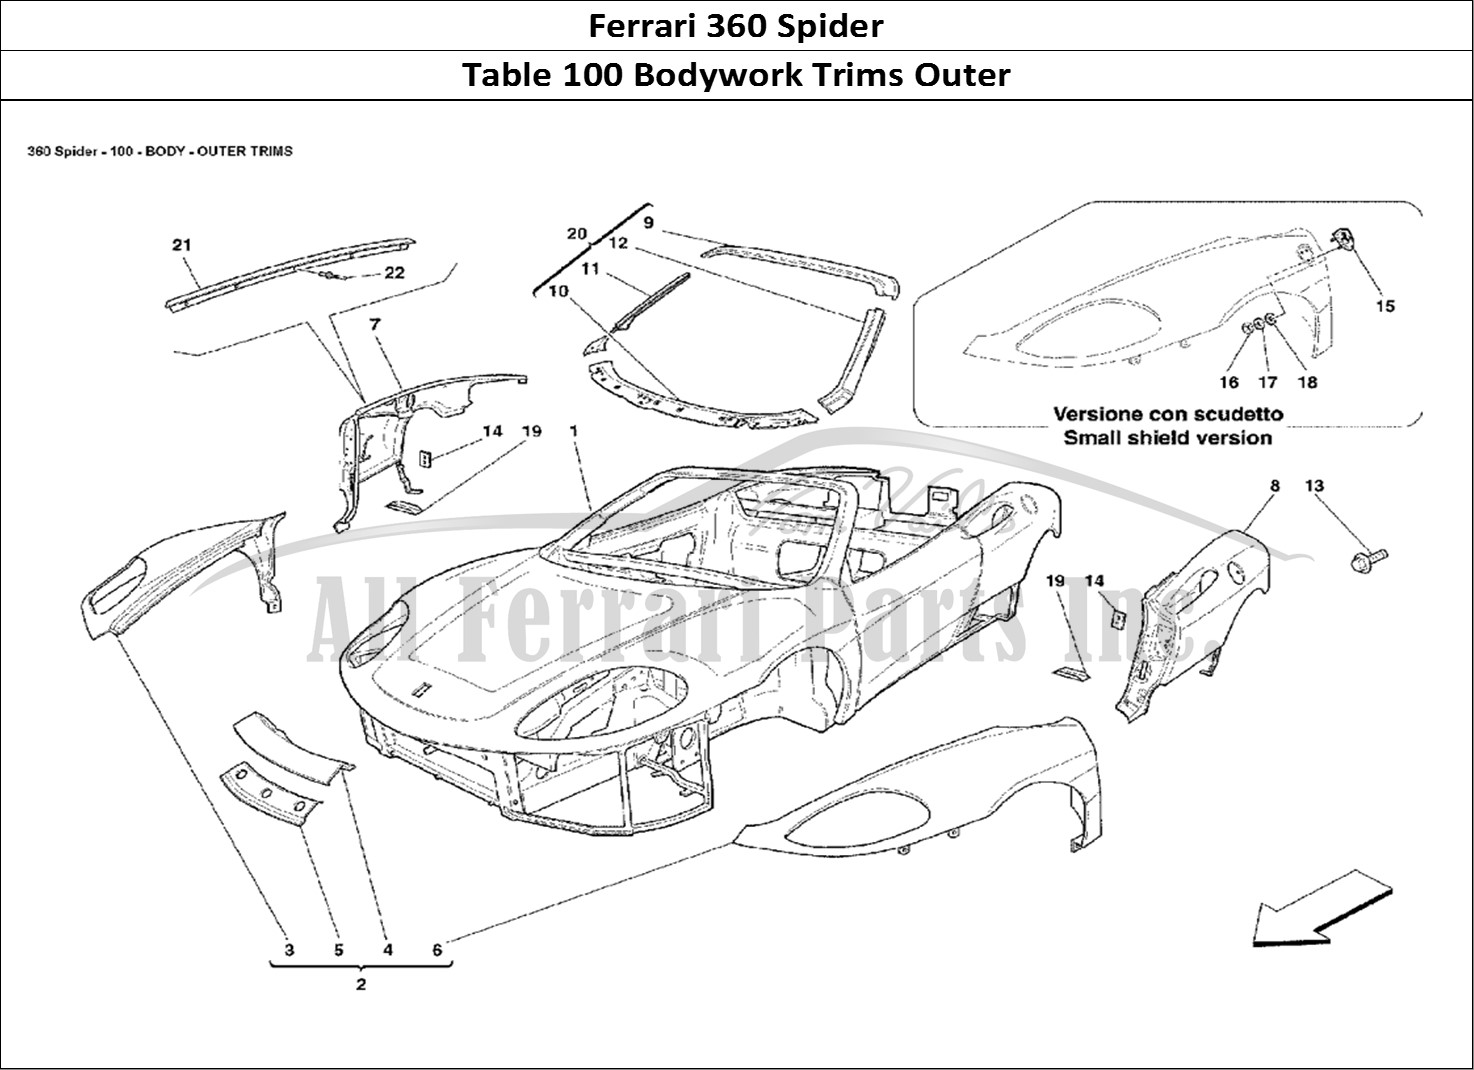 Ferrari Parts Ferrari 360 Spider Page 100 Body - Outer Trims